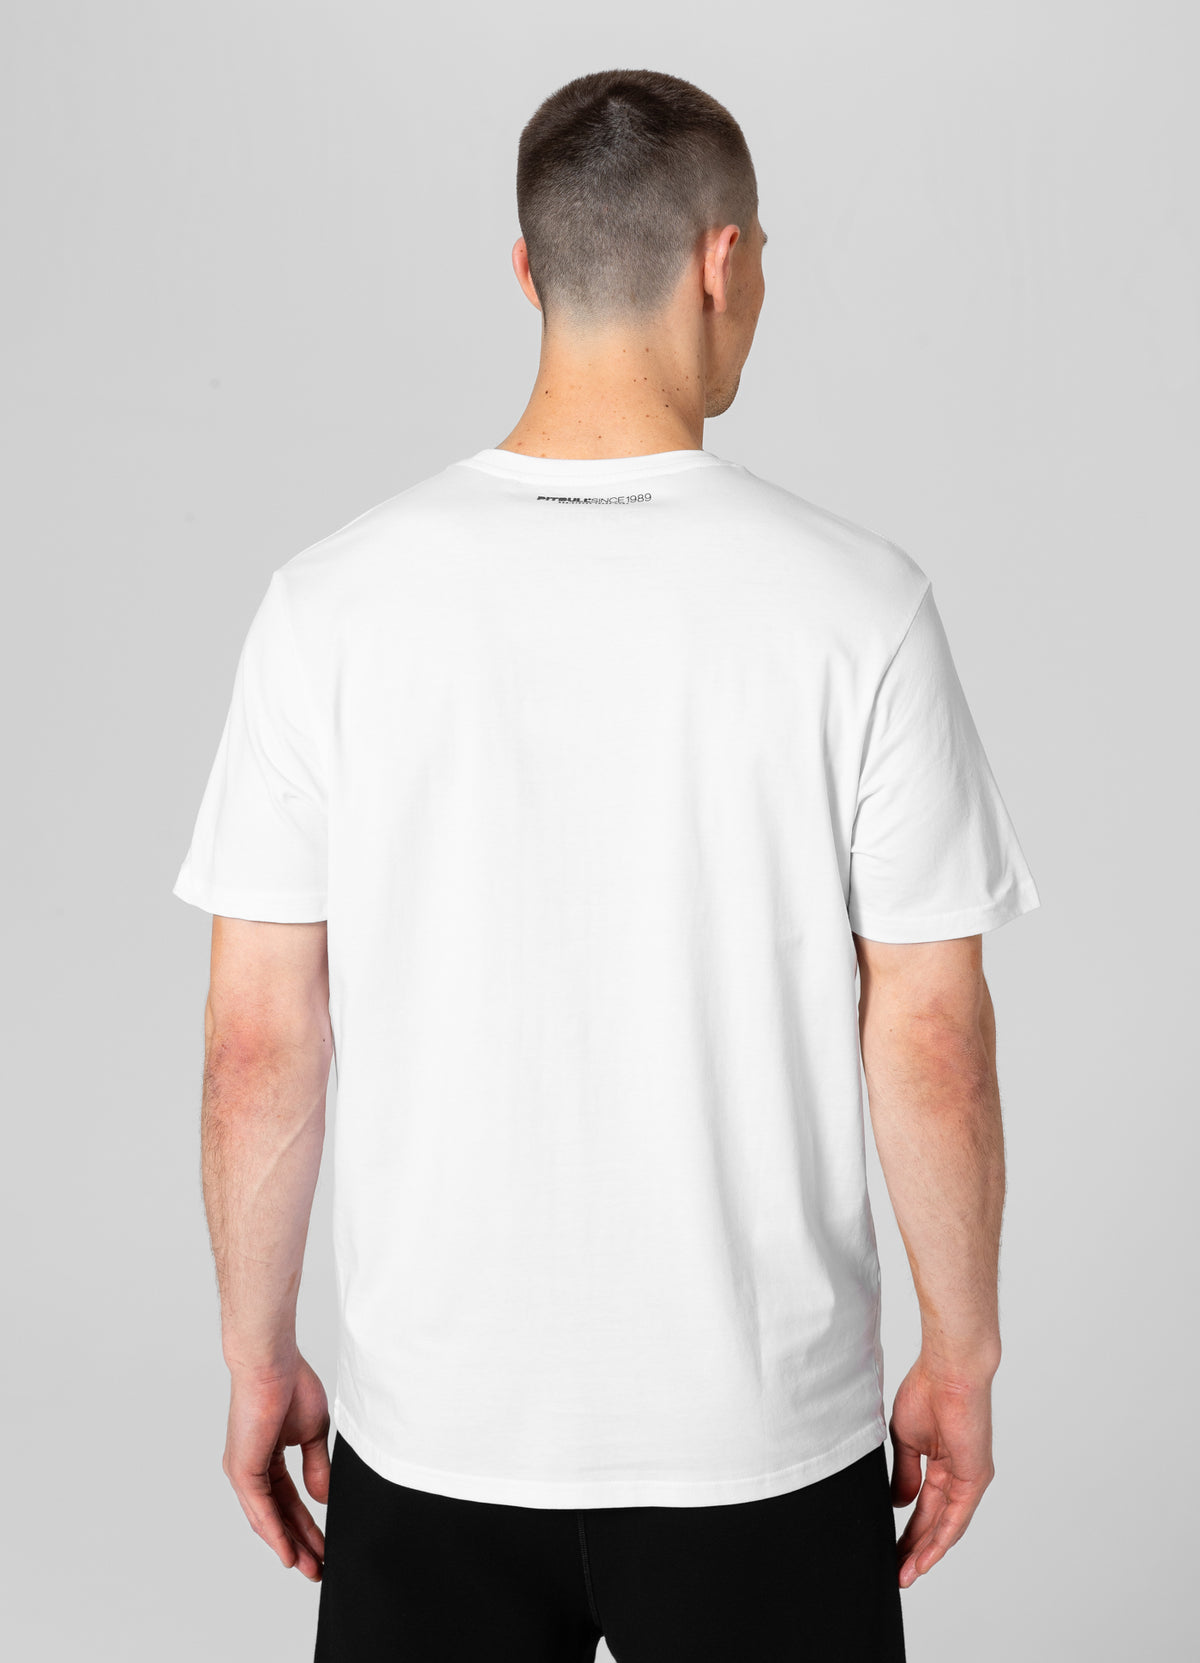 CASINO 3 Lightweight White T-shirt